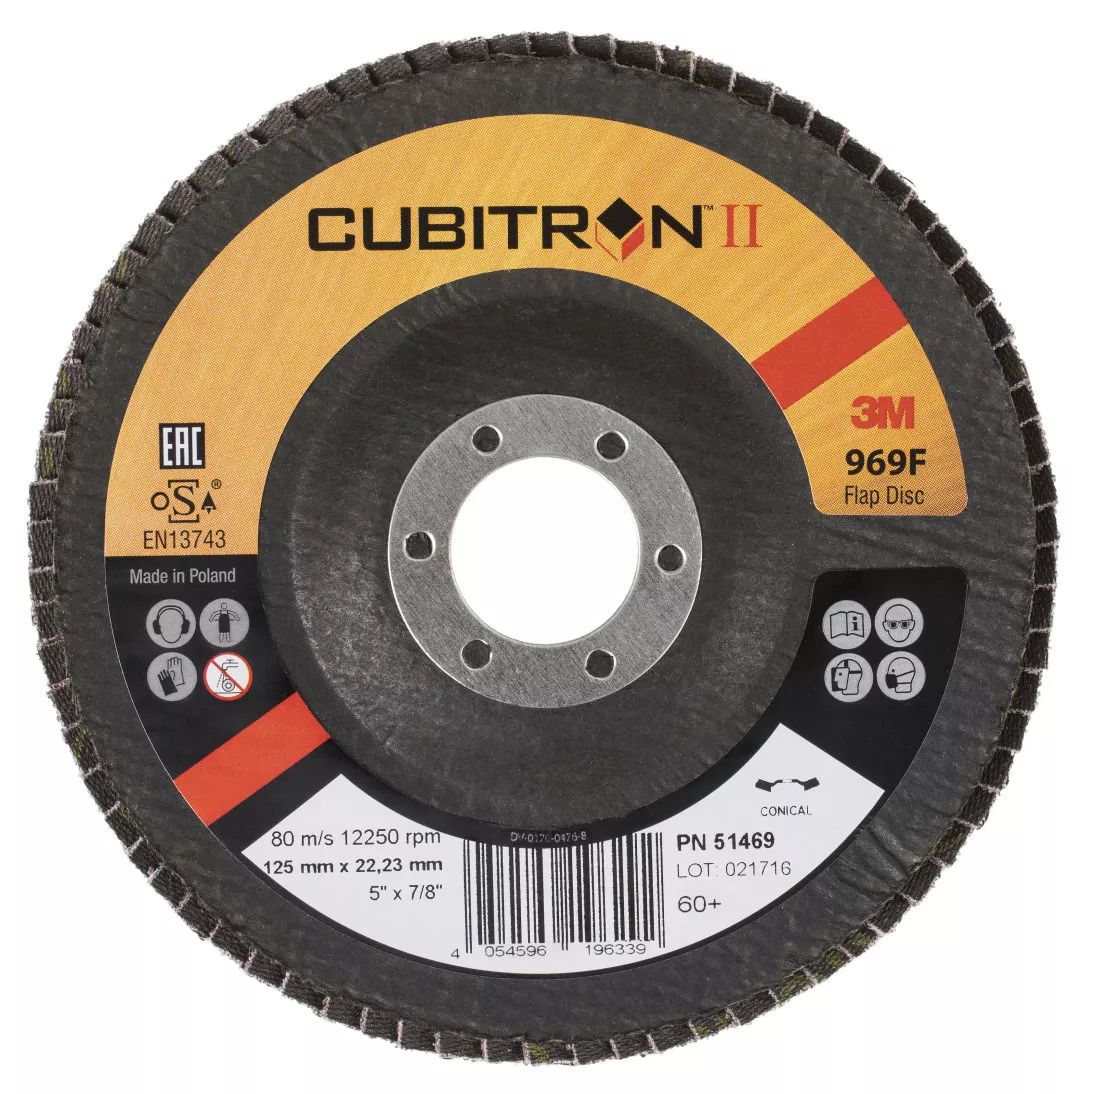 3M™ Cubitron™ II Flap Disc 969F, 60+, T27, 5 in x 7/8 in, 10 ea/Case